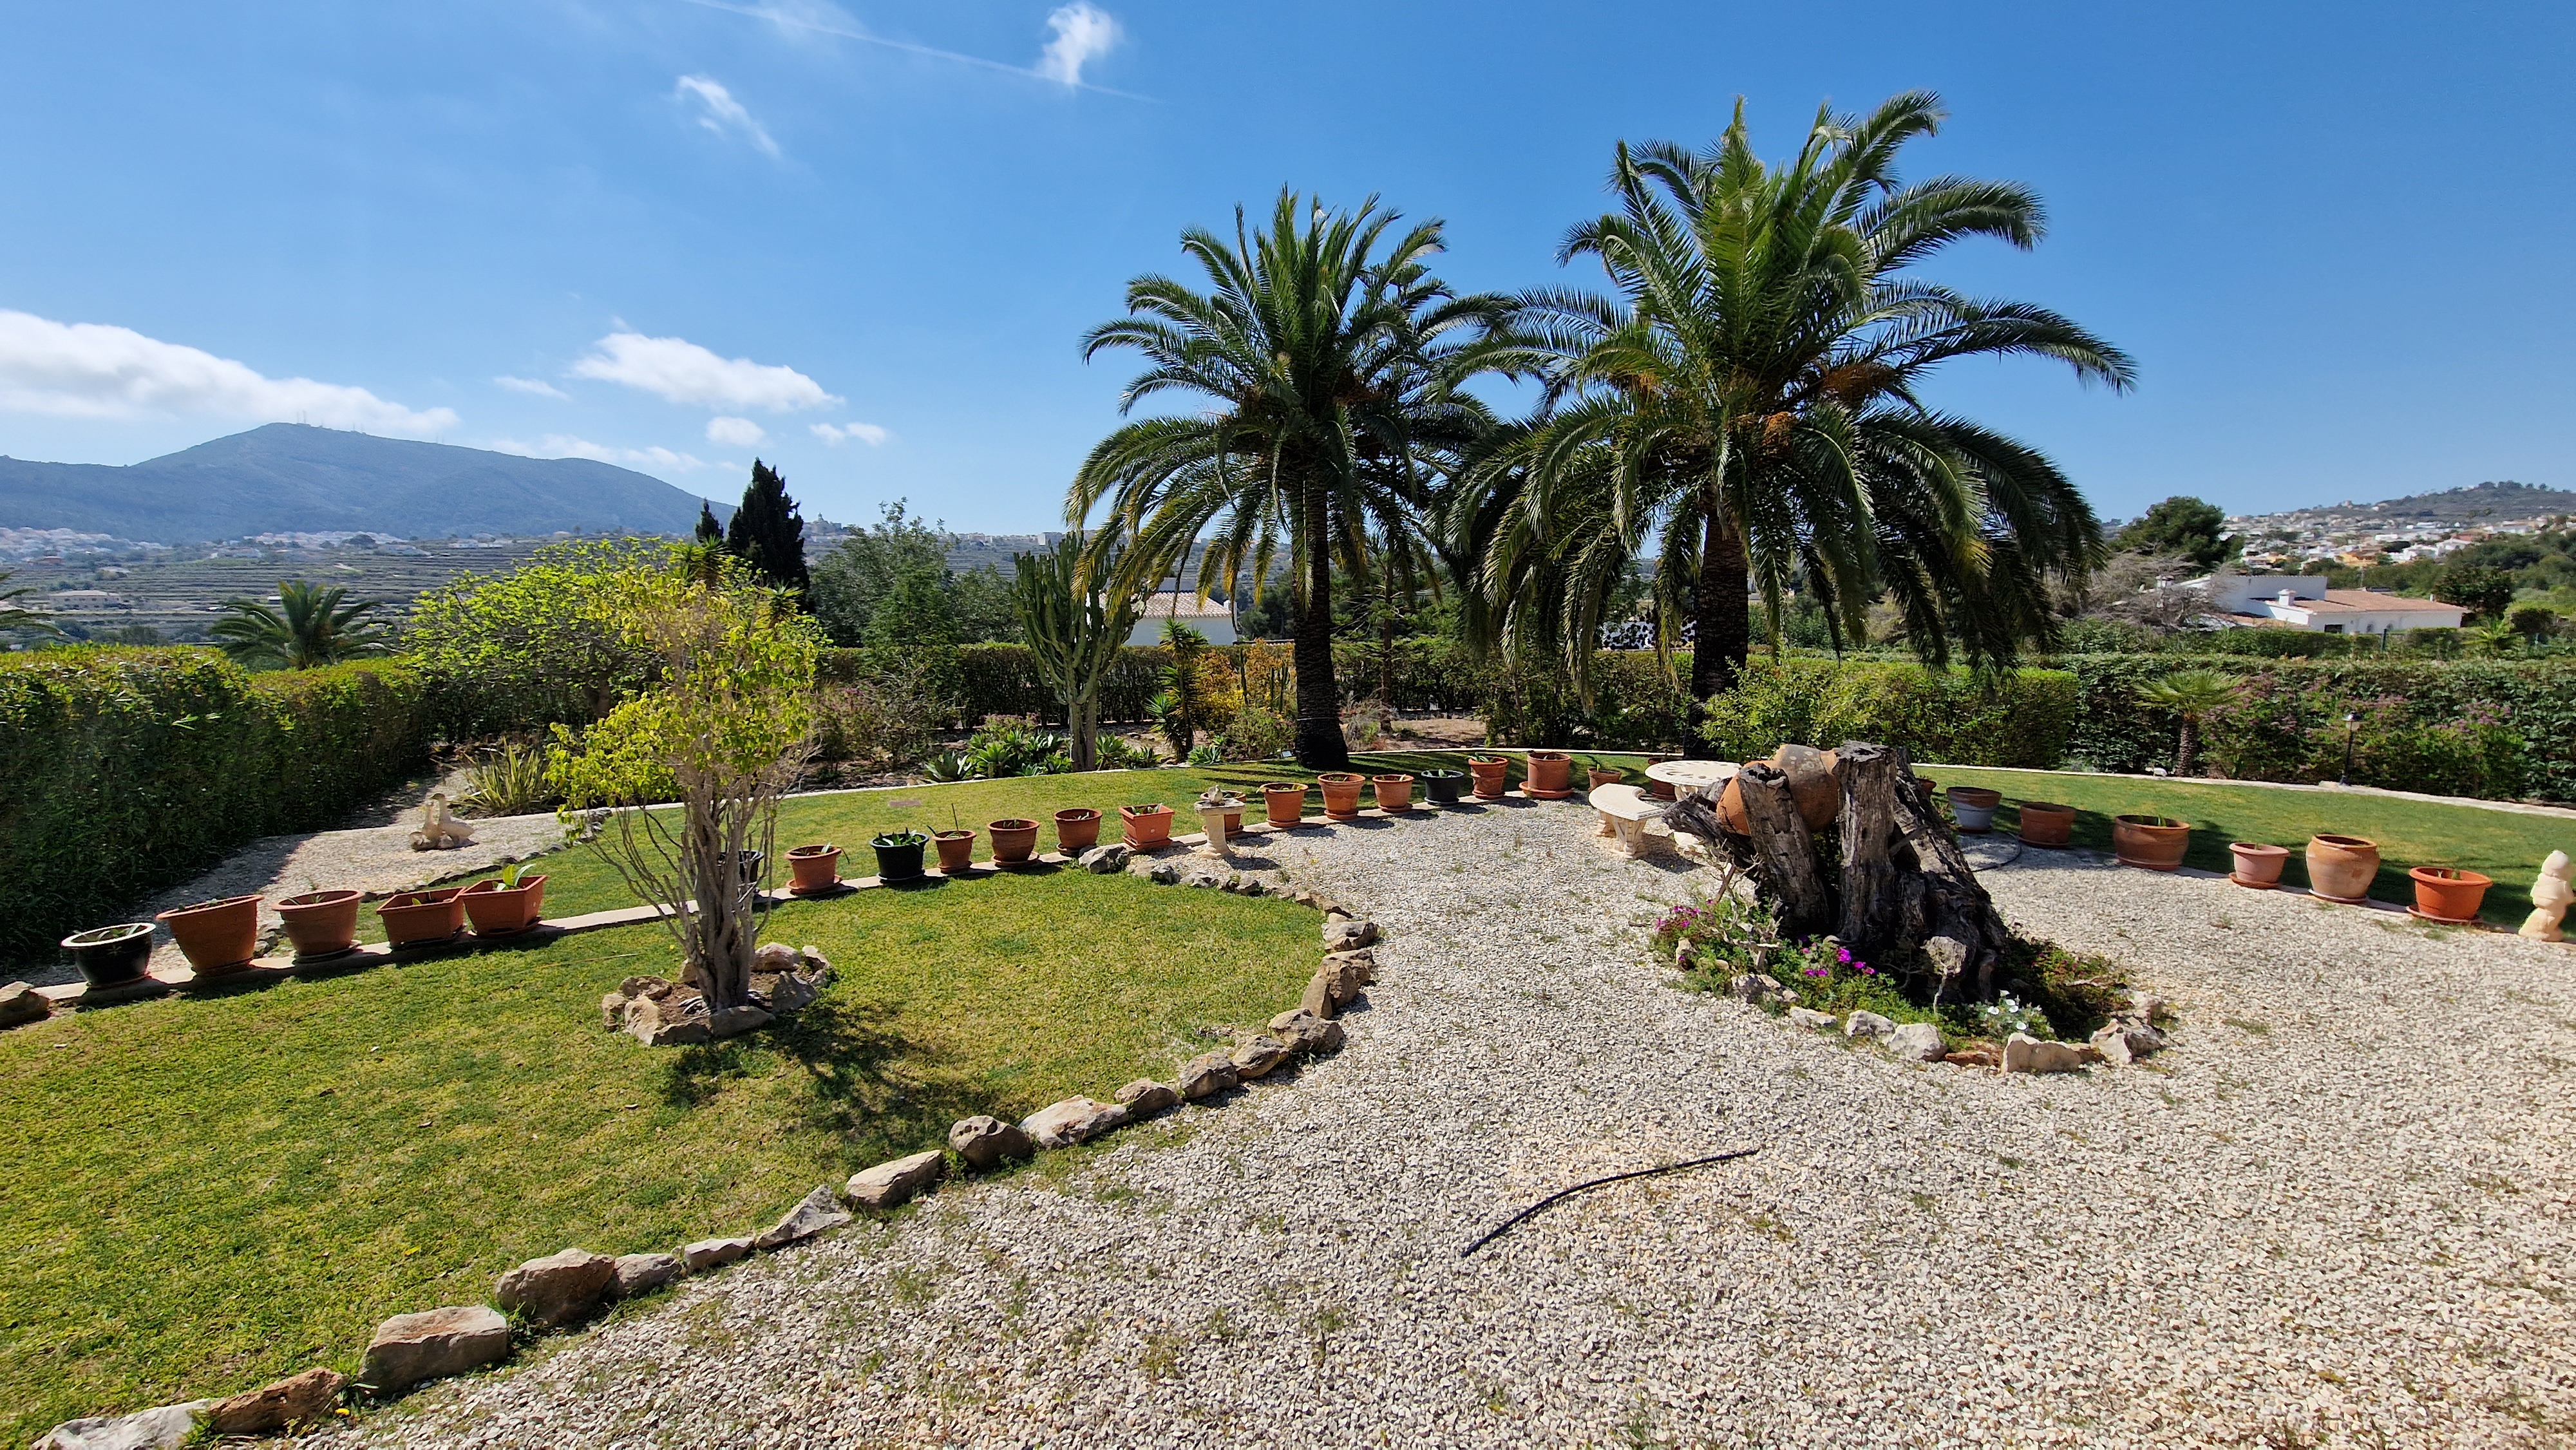 Mediterrane villa met spectaculair uitzicht